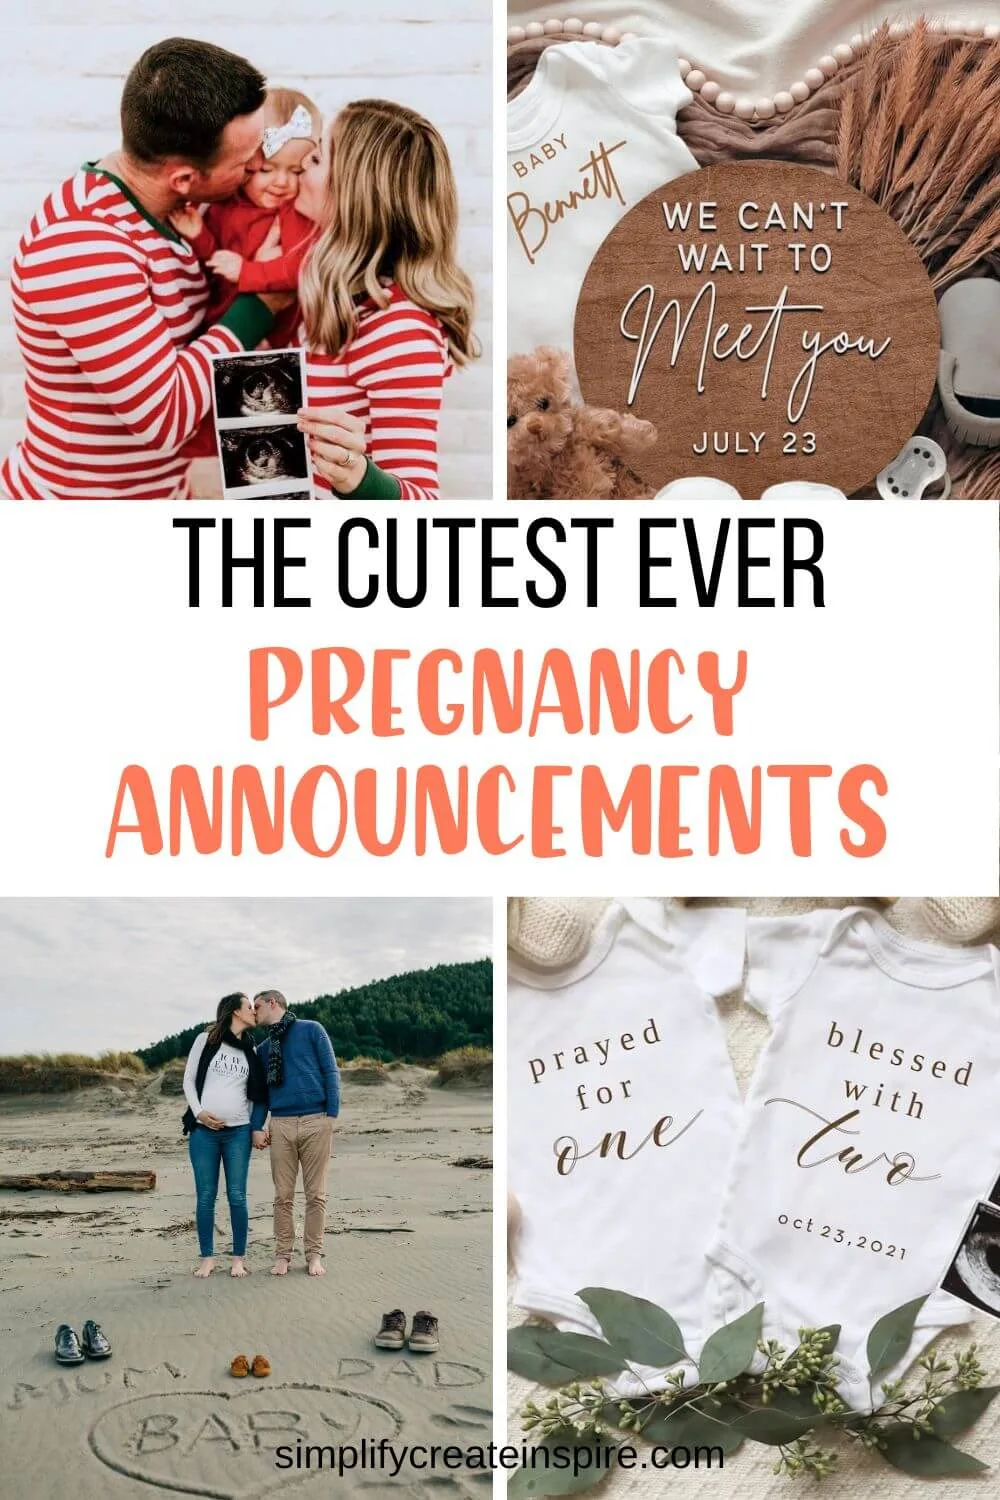 Fun pregnancy announcement ideas